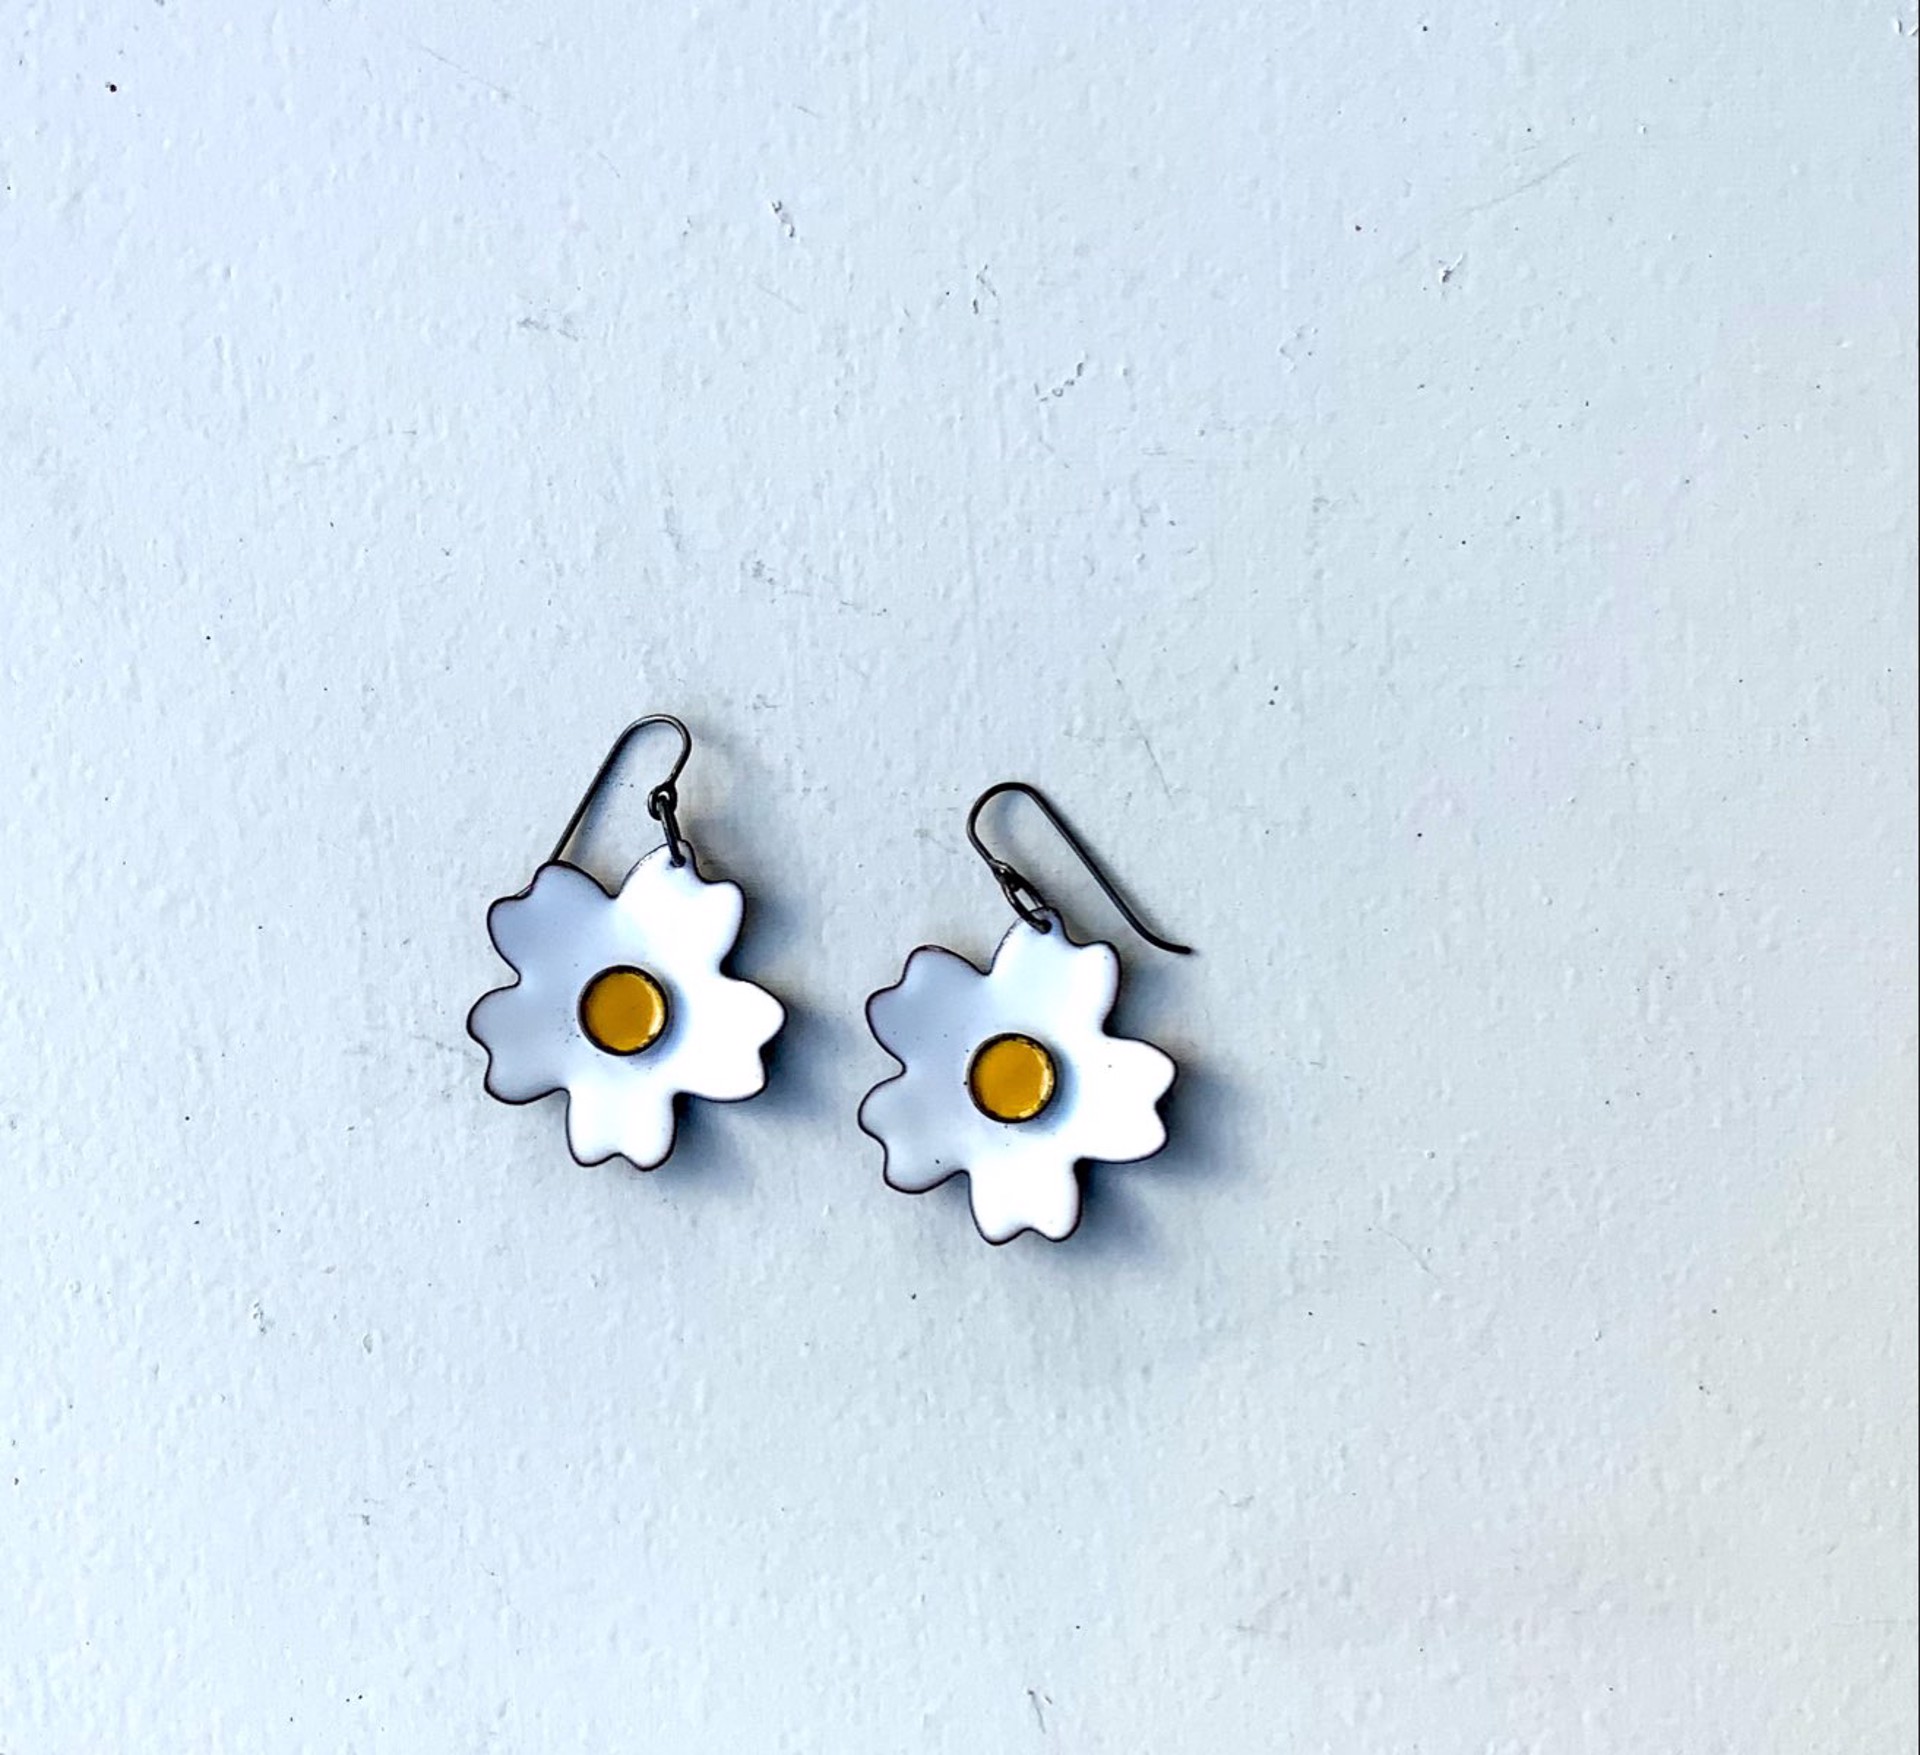 Enamel Flower Earrings by Monty Phillips